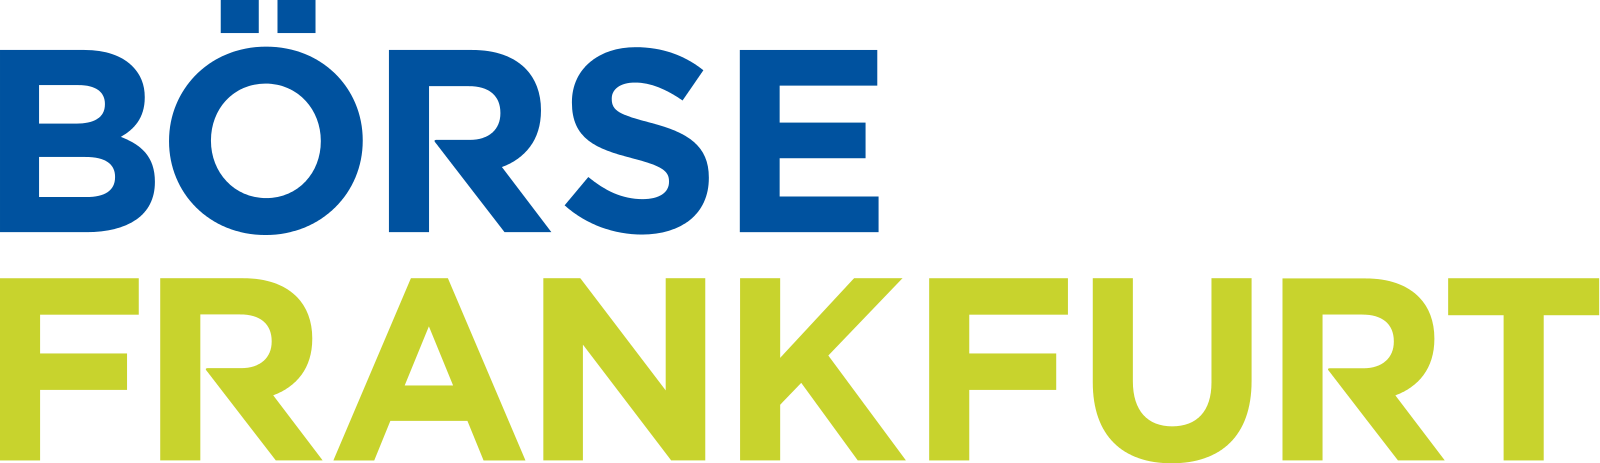 FSE - Frankfurt Stock Exchange - Deutsche Börse Frankfurt - Франкфуртская фондовая биржа